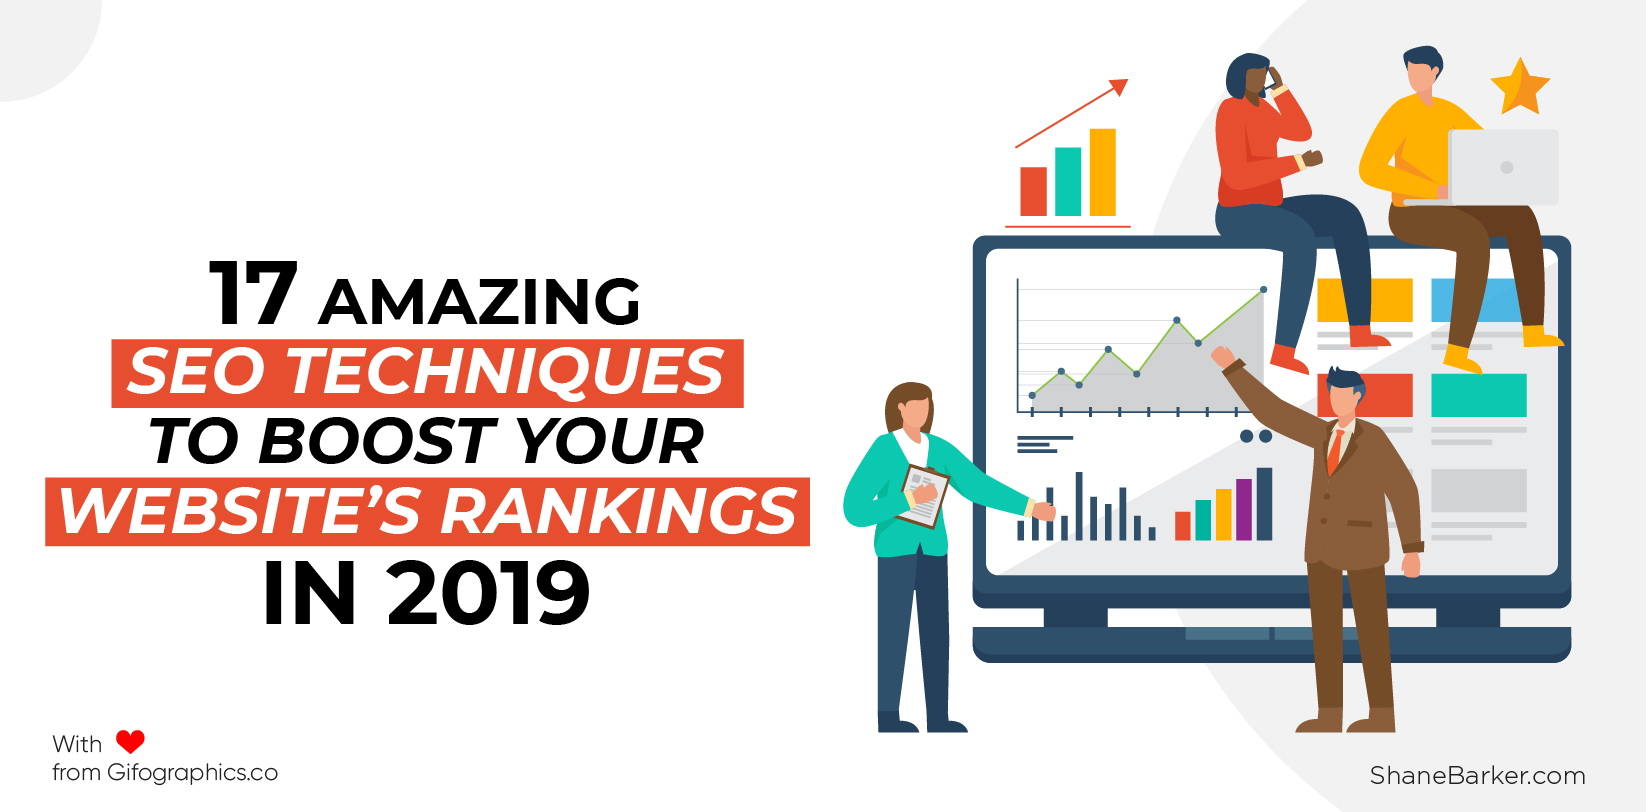 17 เทคนิค SEO ที่น่าทึ่งเพื่อเพิ่มอันดับเว็บไซต์ของคุณในปี 2019 (อัปเดตเมื่อเดือนตุลาคม)